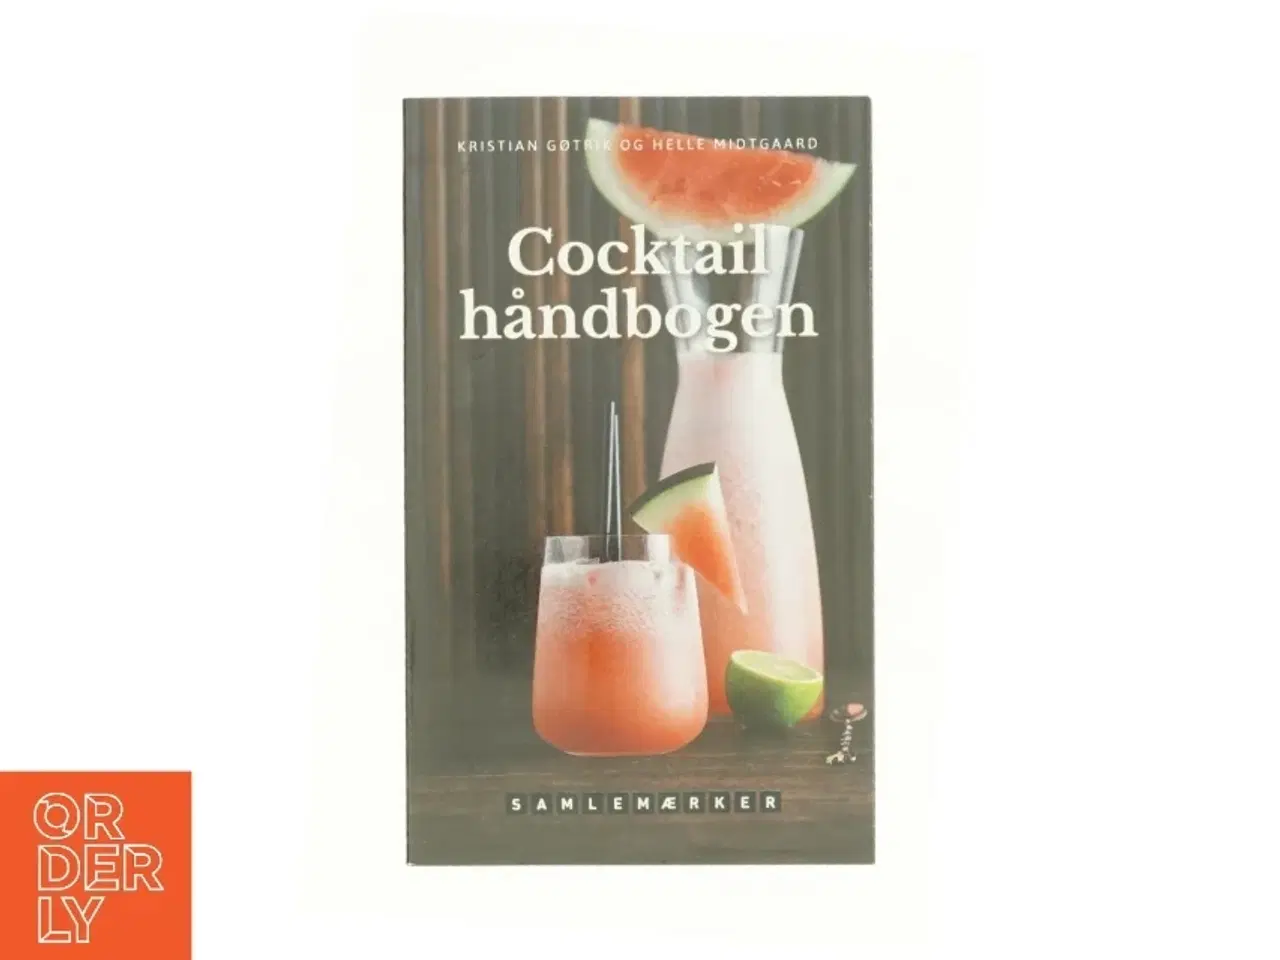 Billede 1 - Cocktail håndbogen af Kristian Gøtrik (Bog)